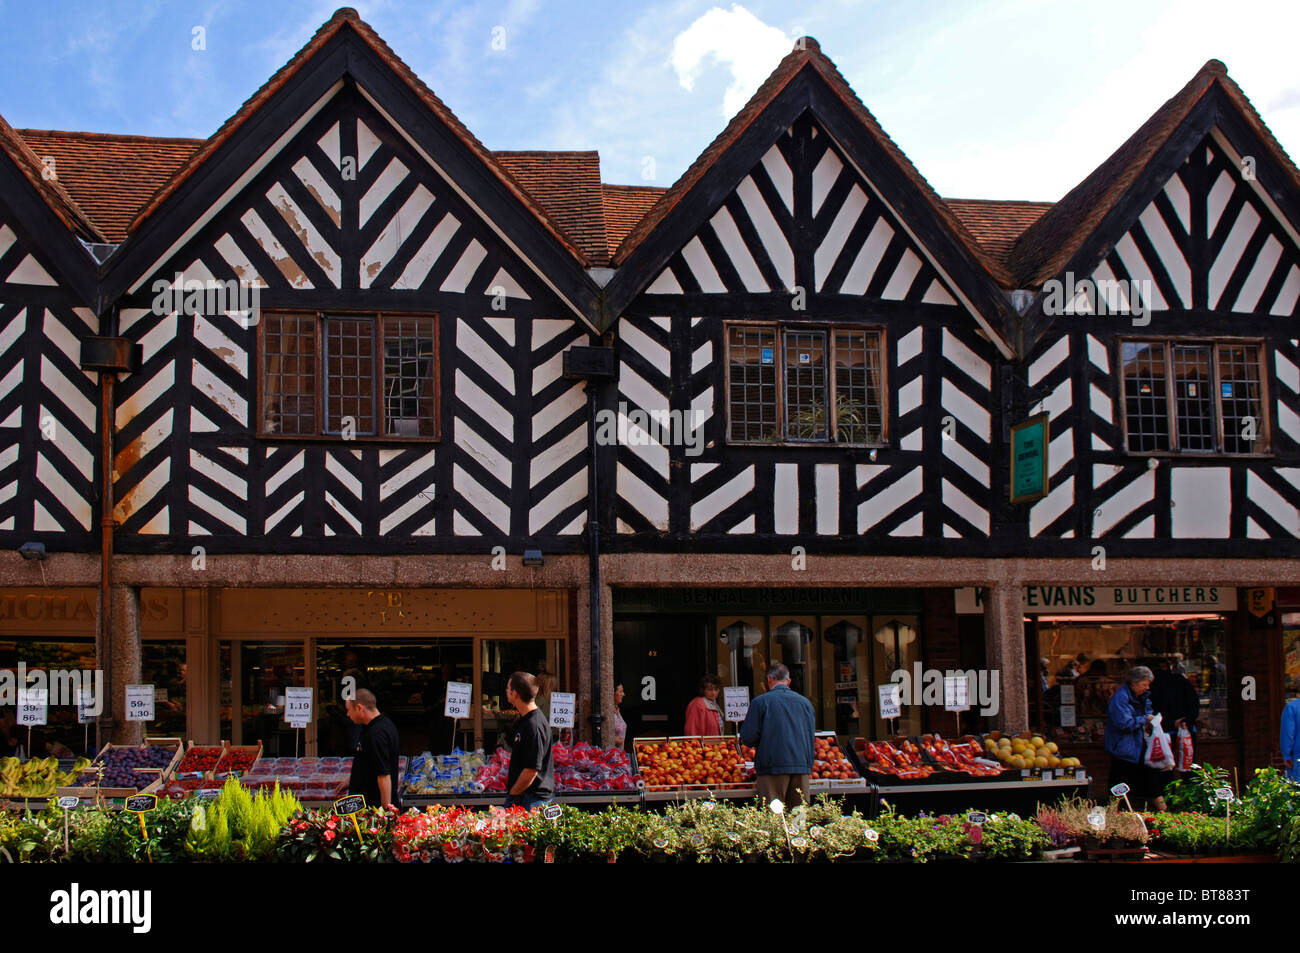 Le vieil anglais avec des maisons à colombages de style Tudor, magasins de fruits, Lichfield, Angleterre, Europe Banque D'Images